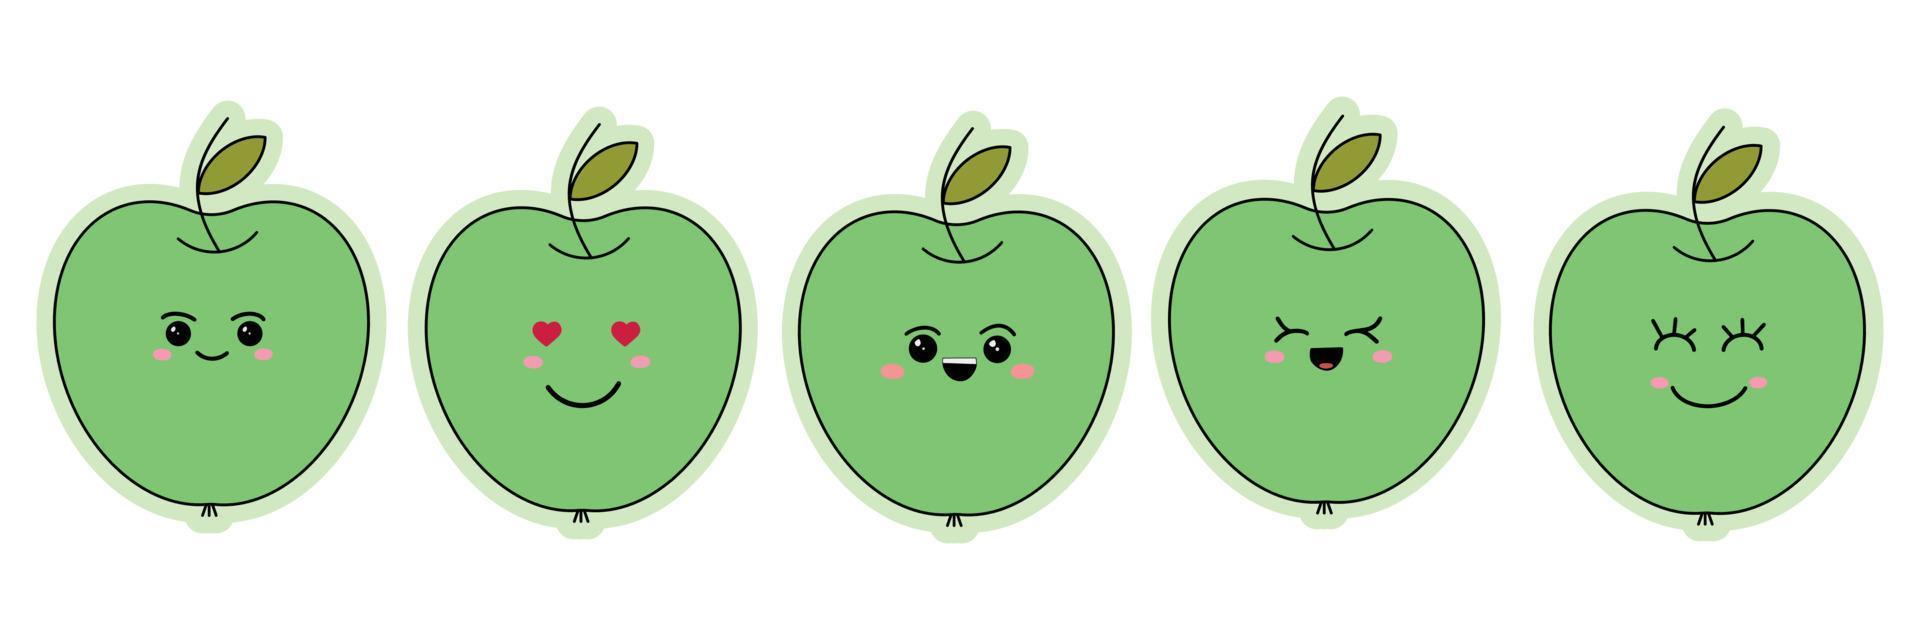 un conjunto de pegatinas de divertidos emoticonos en una manzana verde. divertidos emoticonos de dibujos animados. ilustración vectorial aislado sobre fondo blanco vector